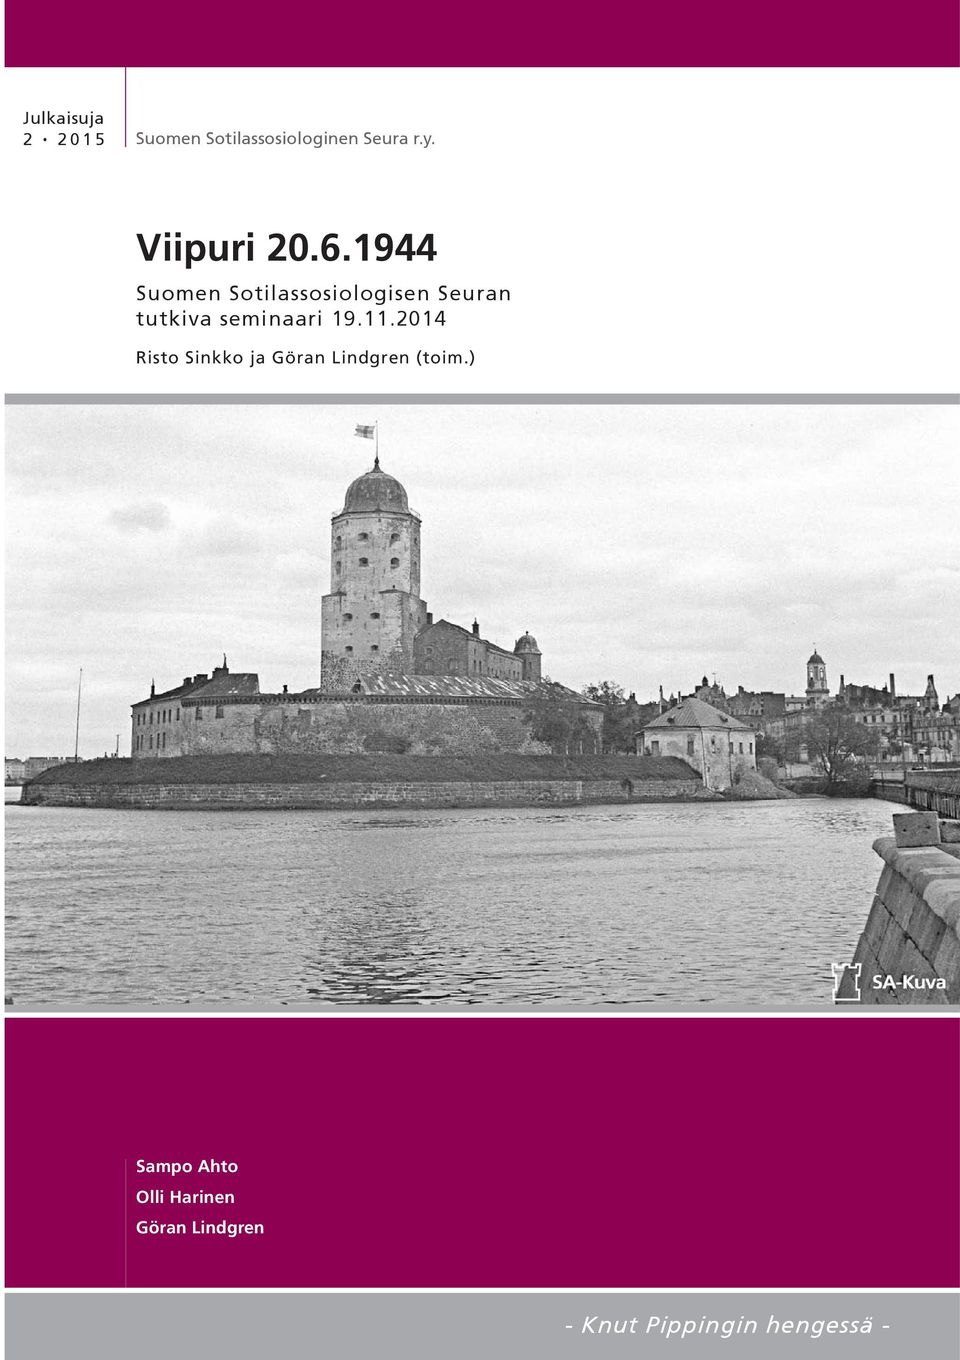 1944 Suomen Sotilassosiologisen Seuran tutkiva seminaari 19.